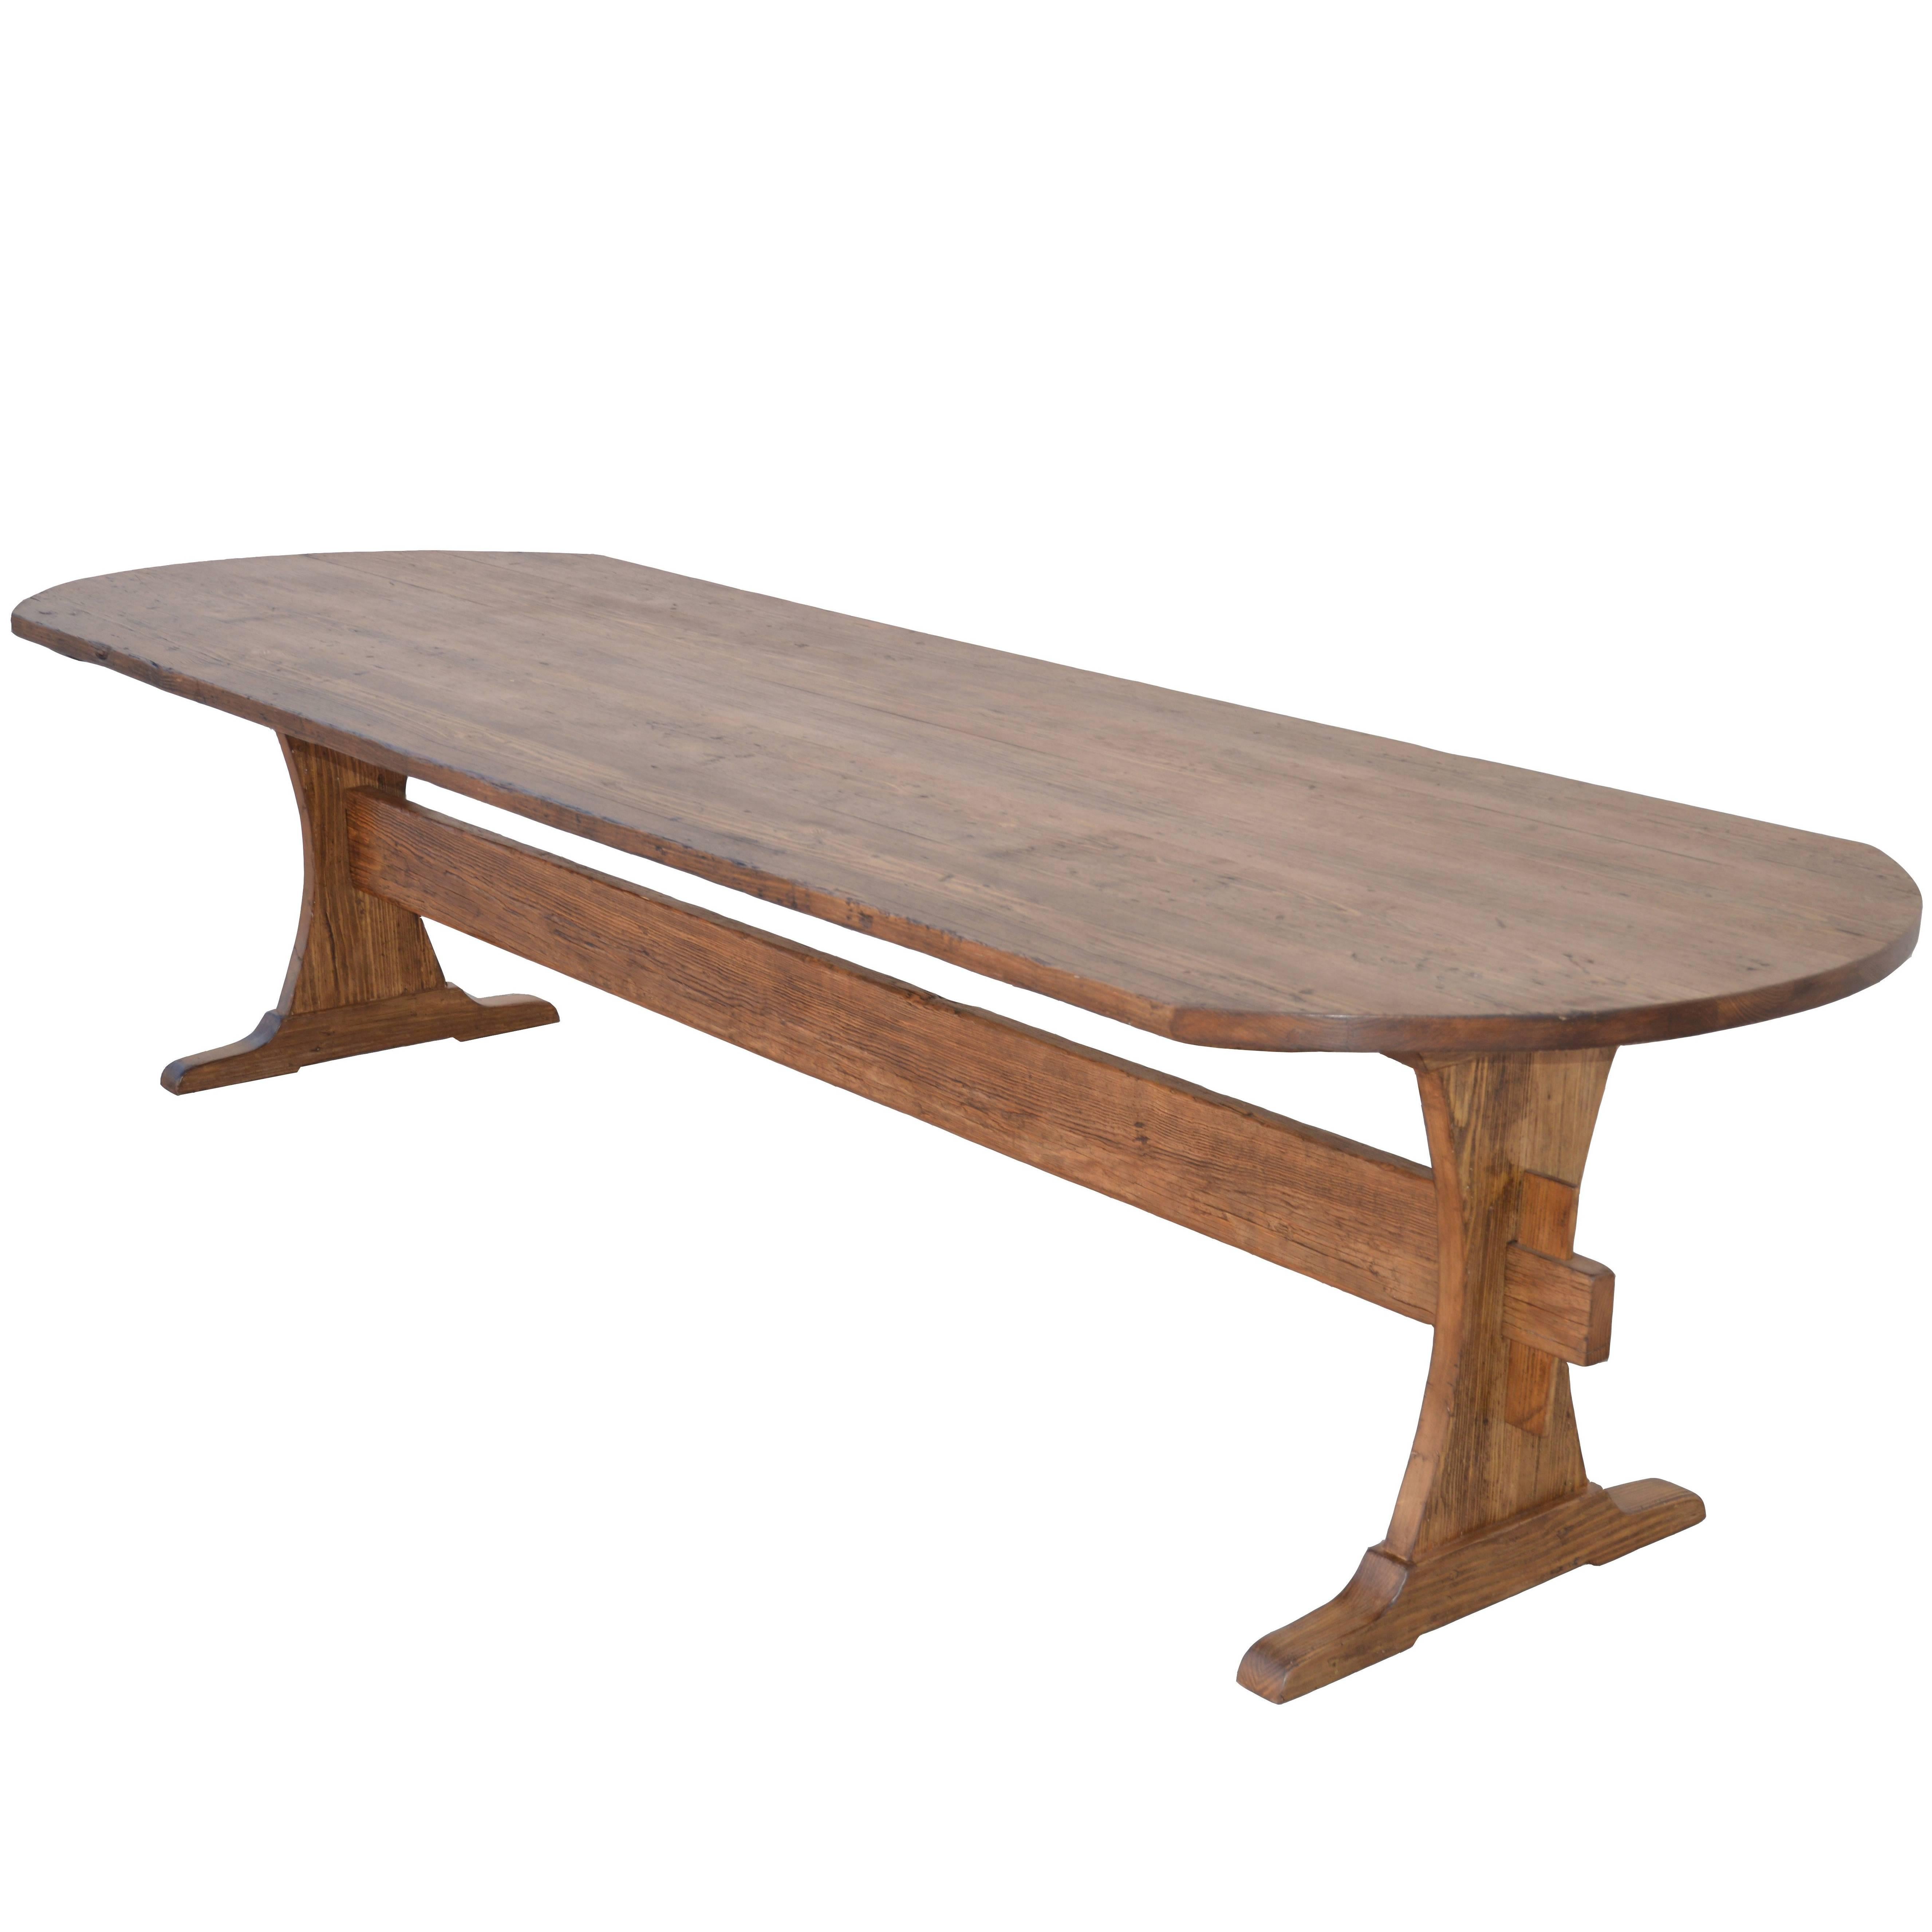 Custom Farm Table in Reclaimed Heart-Pine, Built to Order